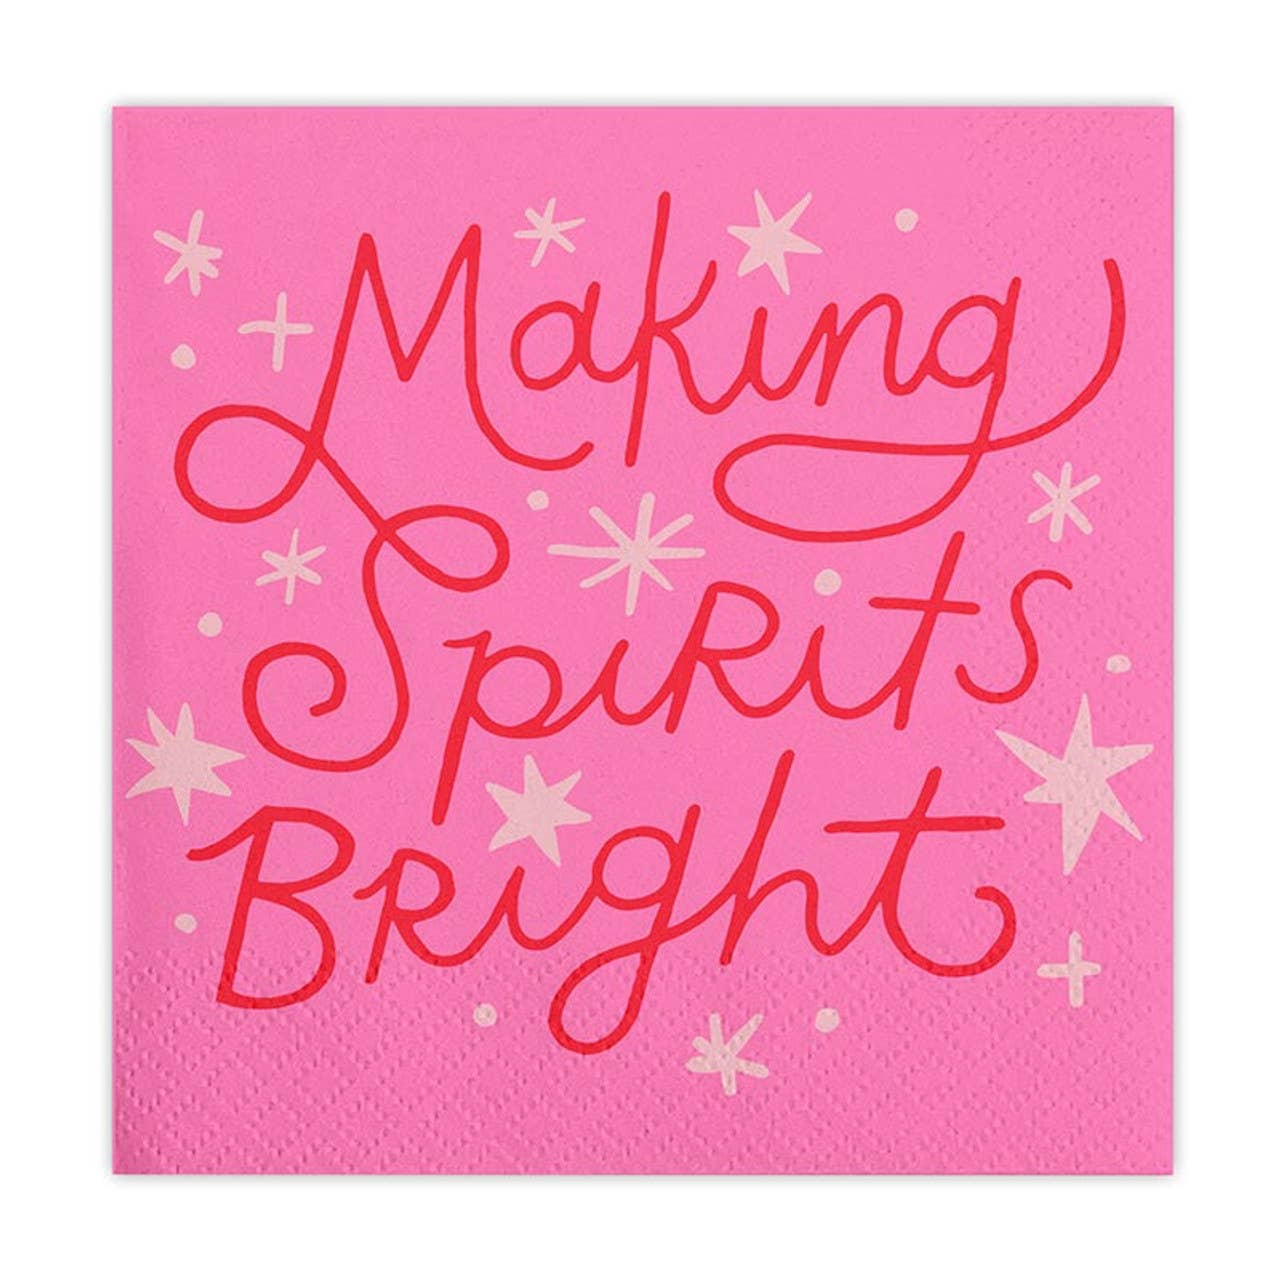 Making Spirits Bright Napkins